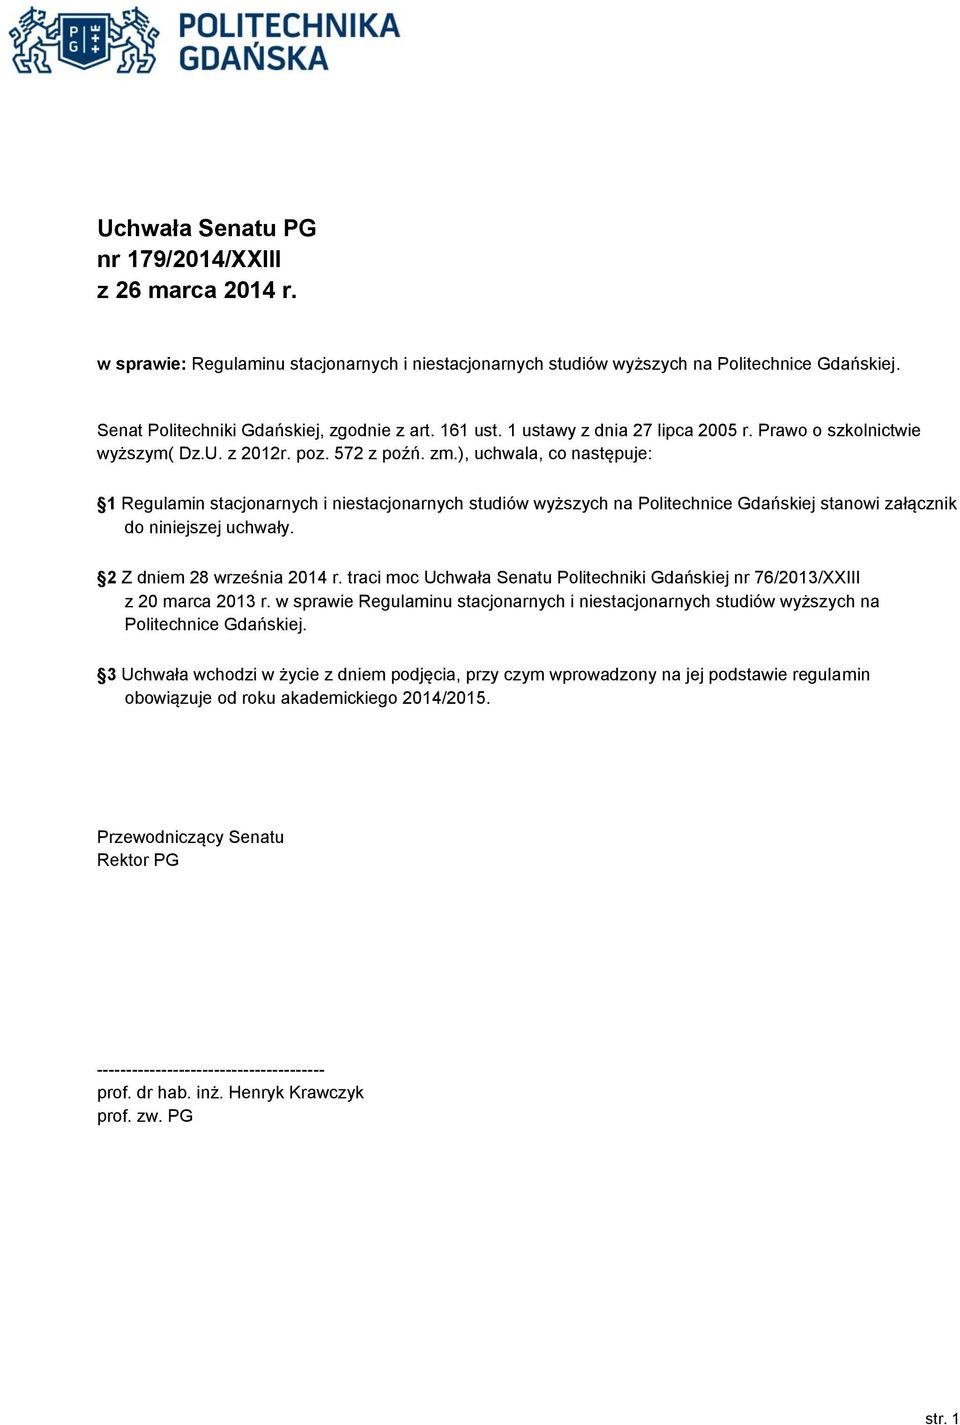 ), uchwala, co następuje: 1 Regulamin stacjonarnych i niestacjonarnych studiów wyższych na Politechnice Gdańskiej stanowi załącznik do niniejszej uchwały. 2 Z dniem 28 września 2014 r.